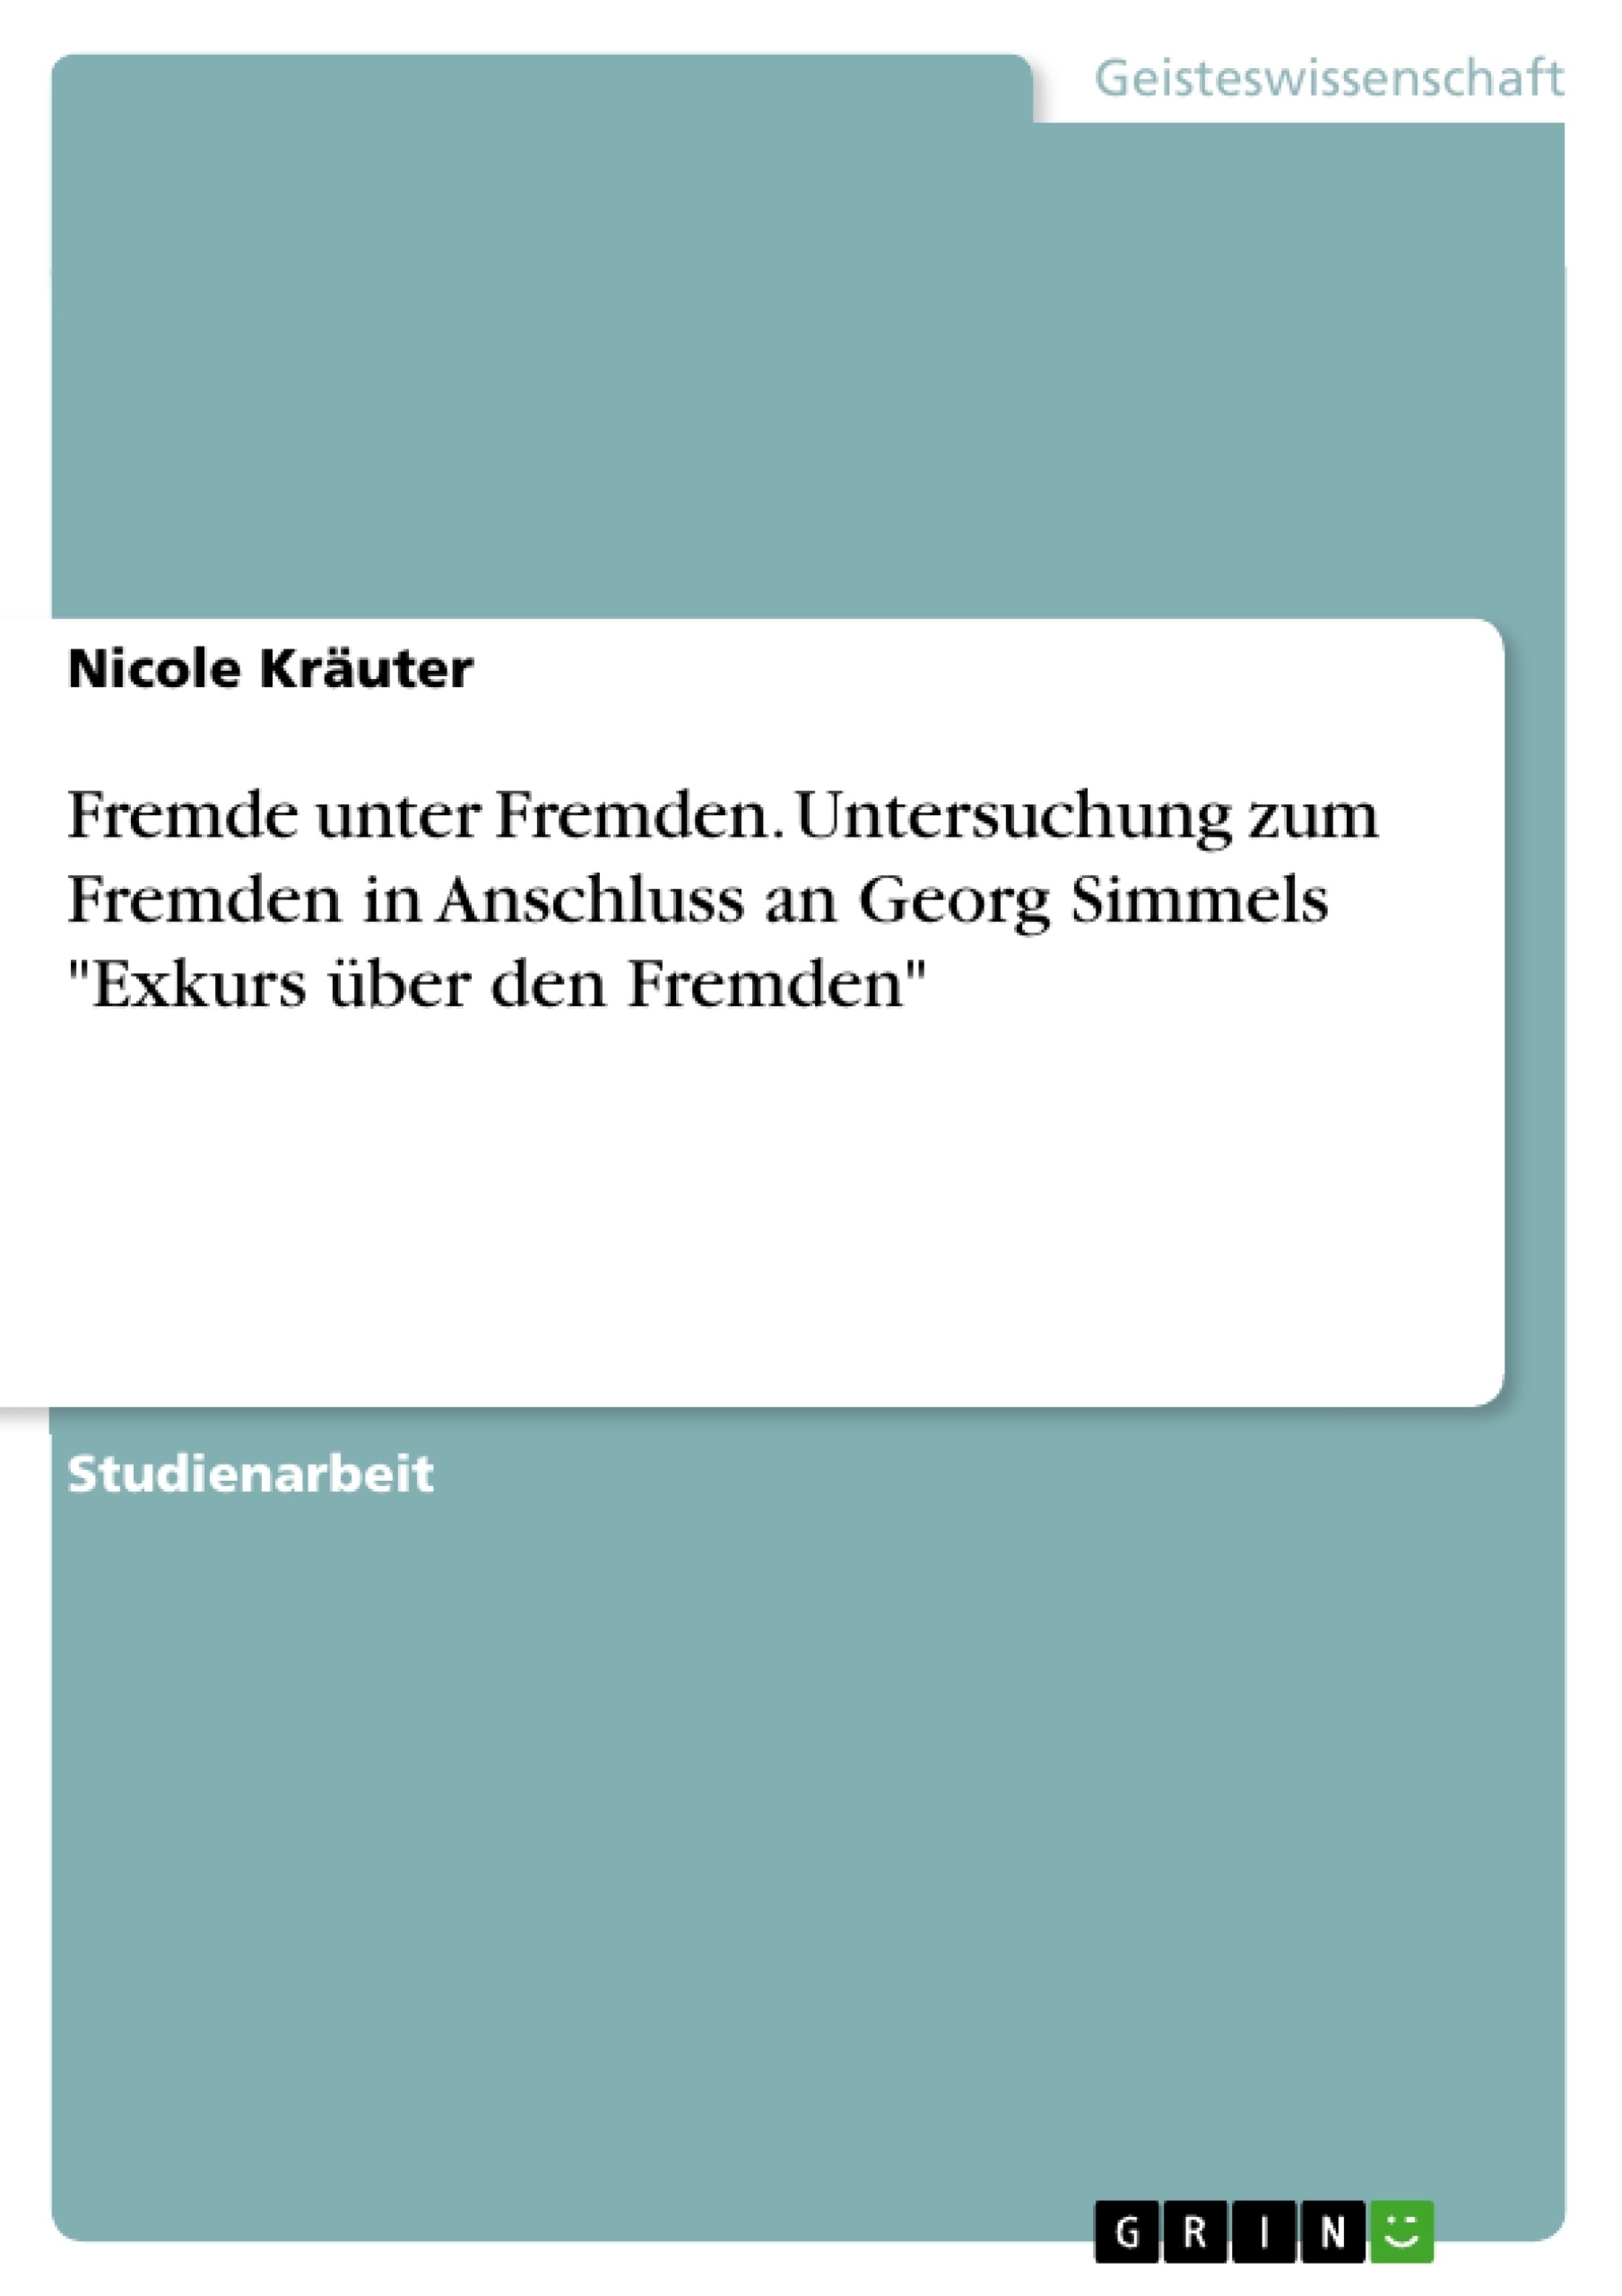 Title: Fremde unter Fremden. Untersuchung zum Fremden in Anschluss an Georg Simmels "Exkurs über den Fremden"